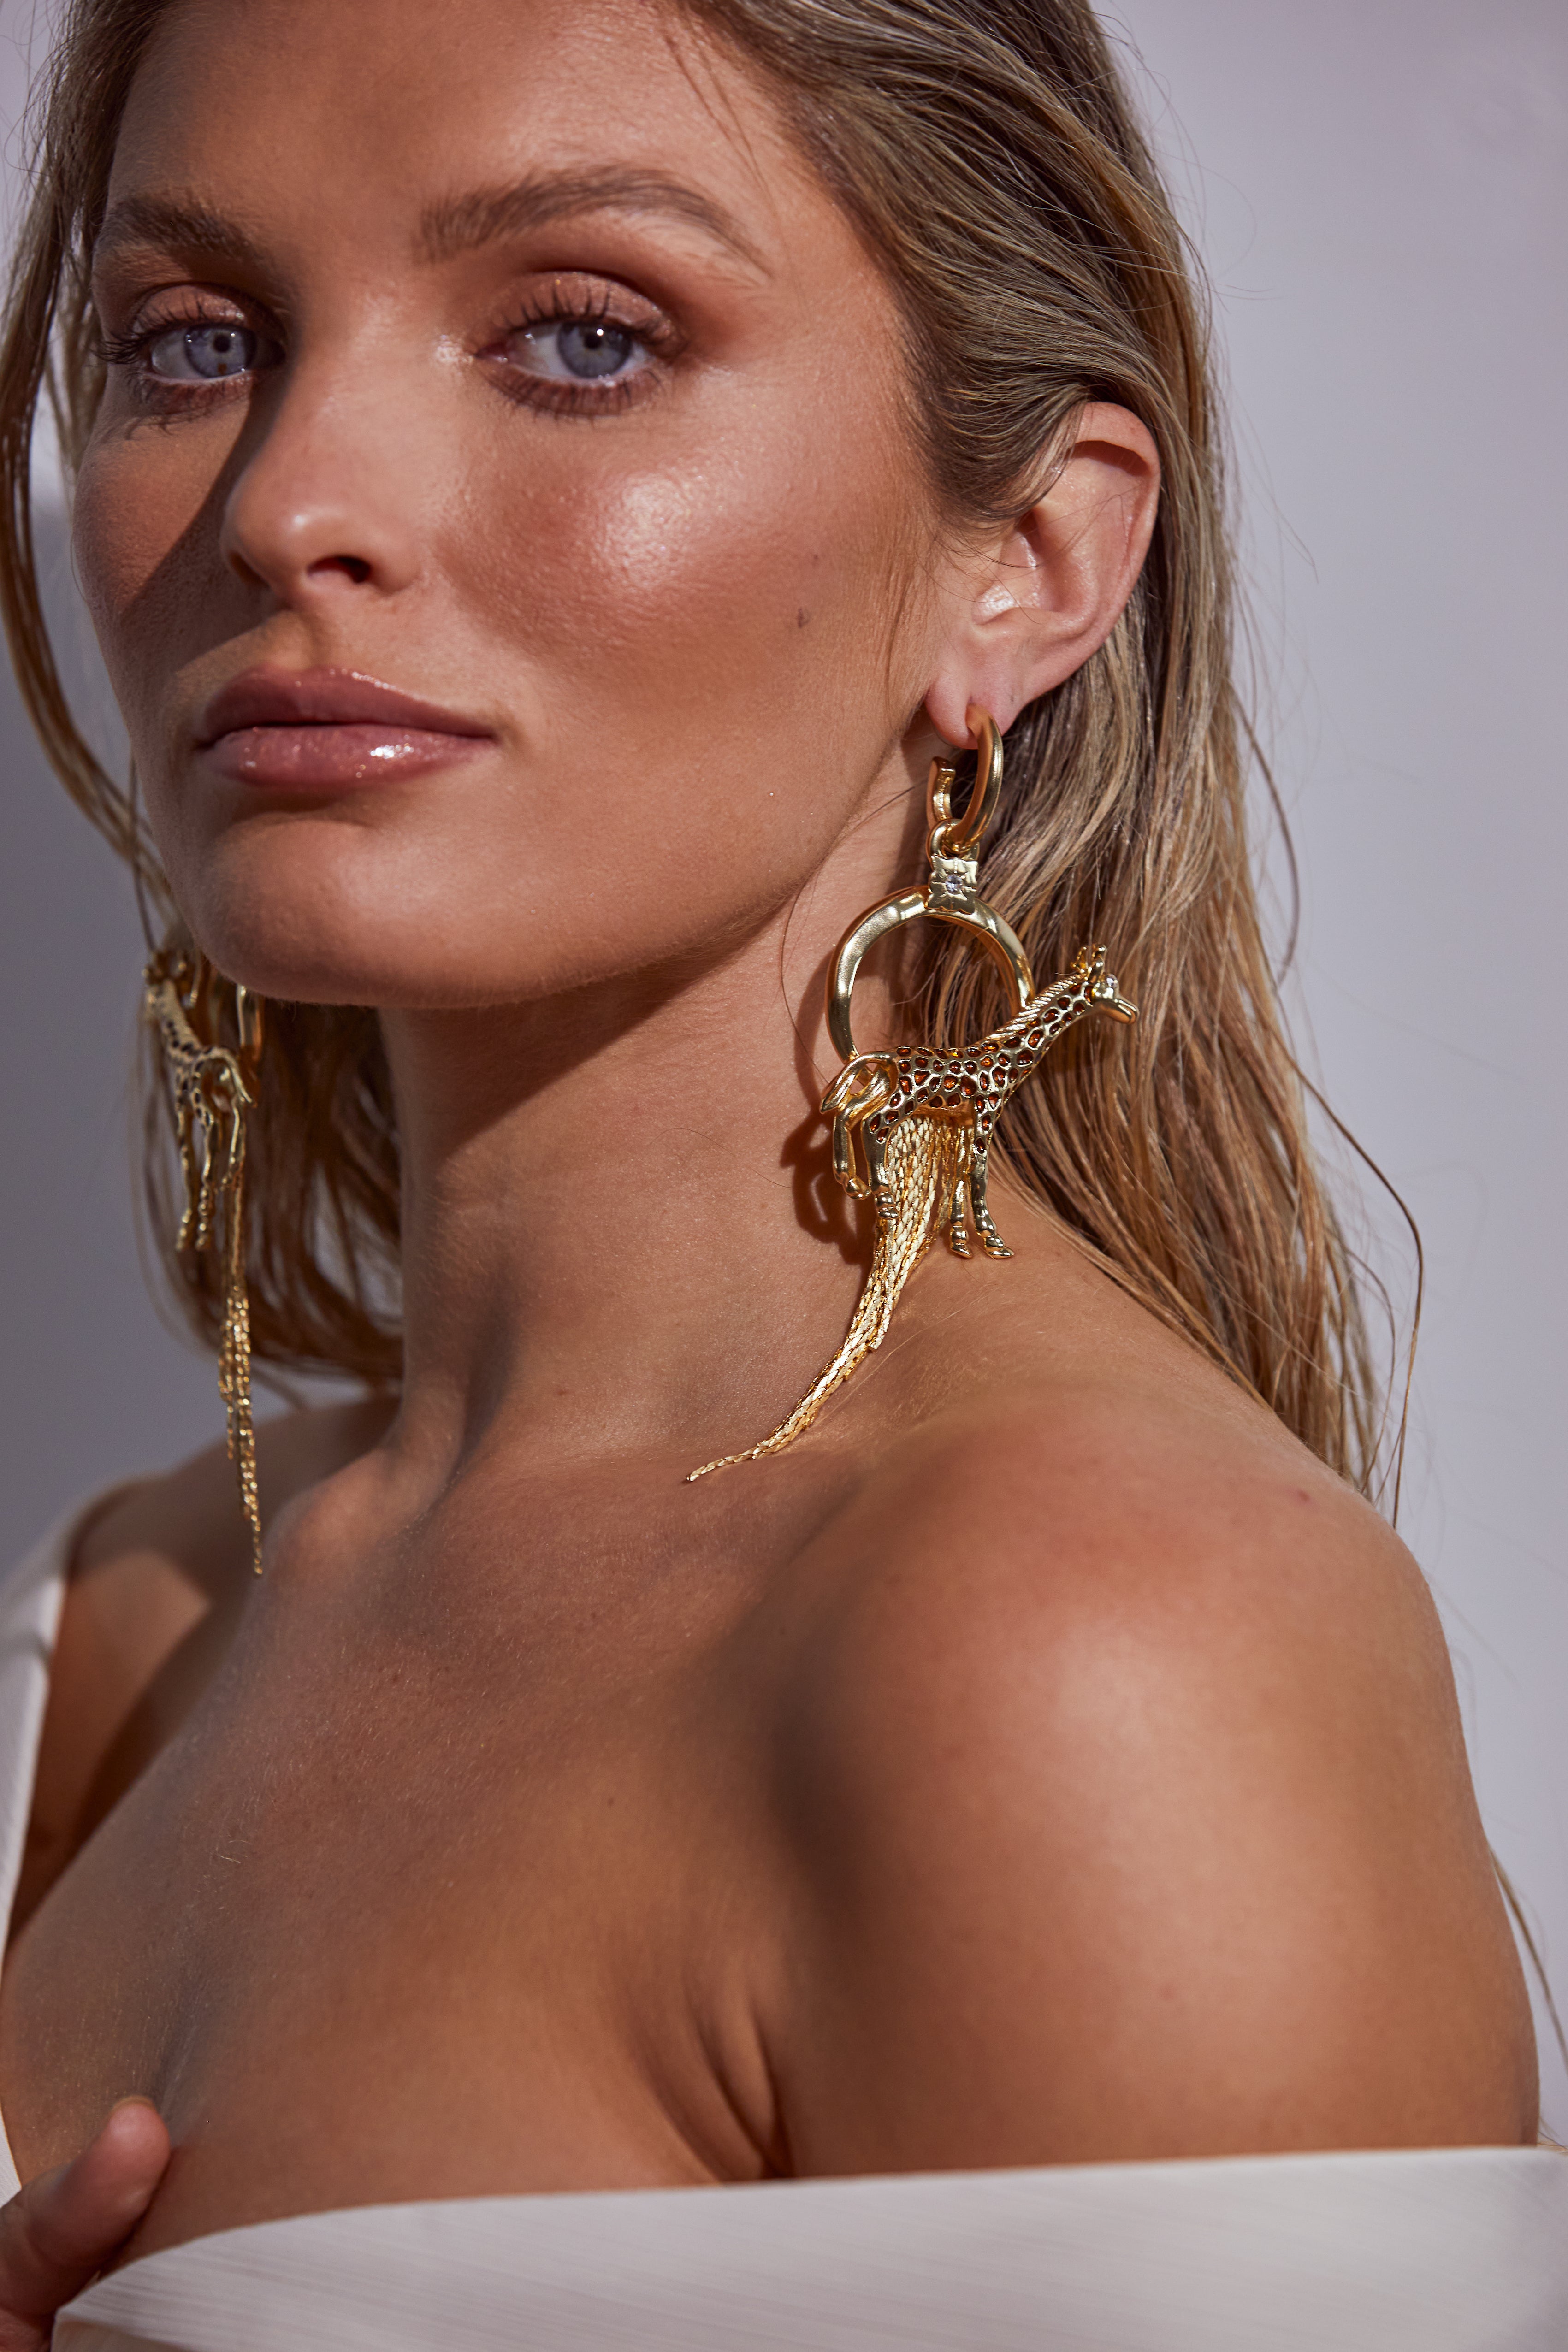 Kitte Zanzibar Earrings Gold Worn By Model